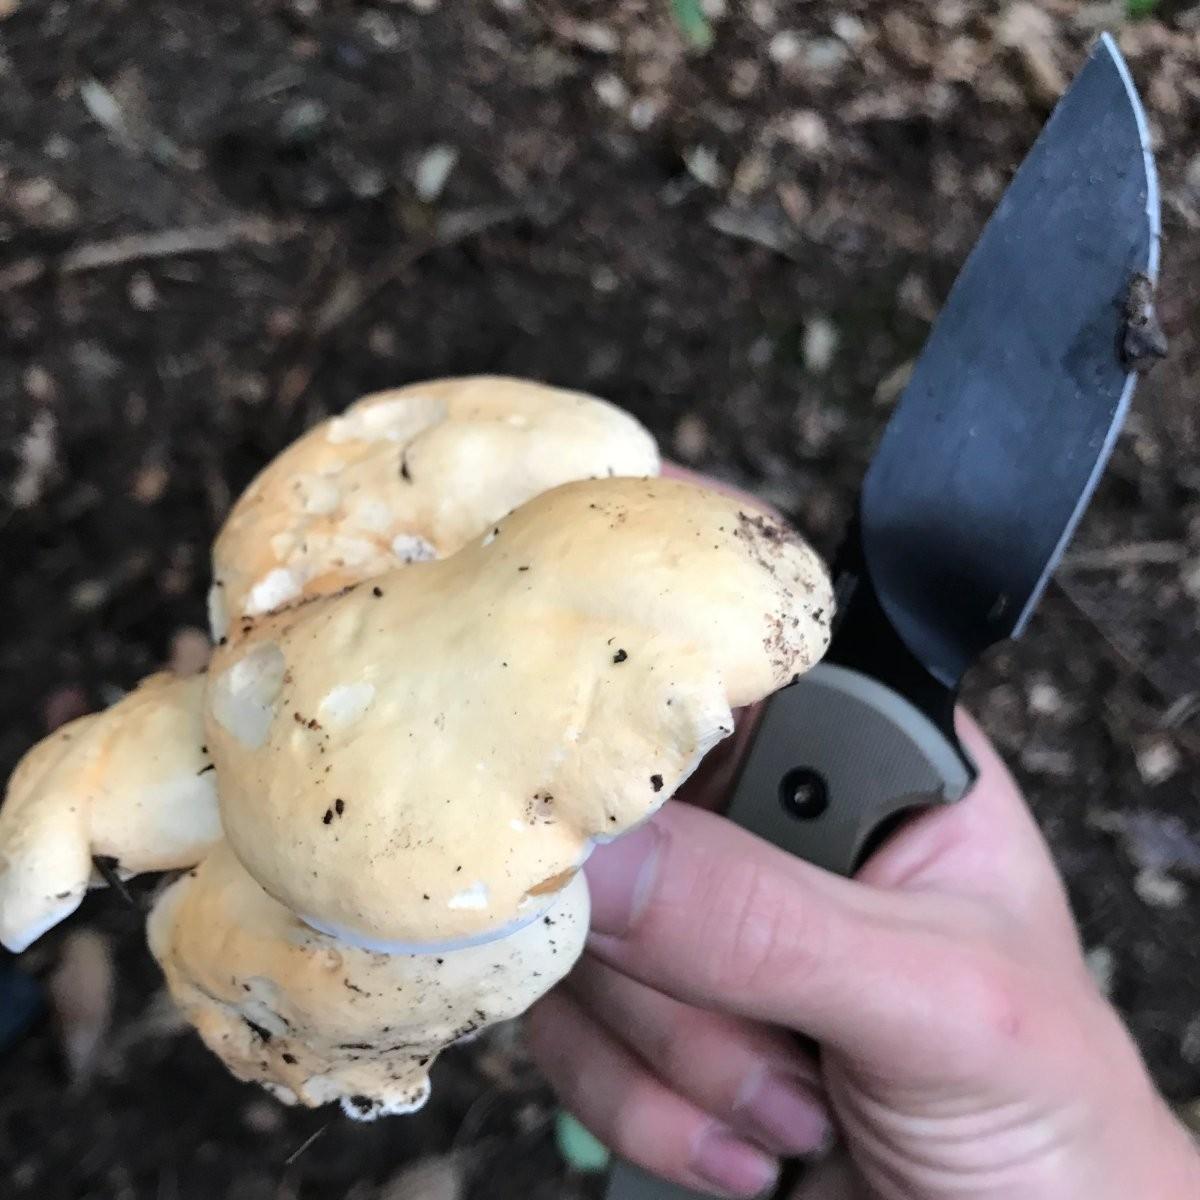 Eine Hand hält einen Pilz und ein Messer